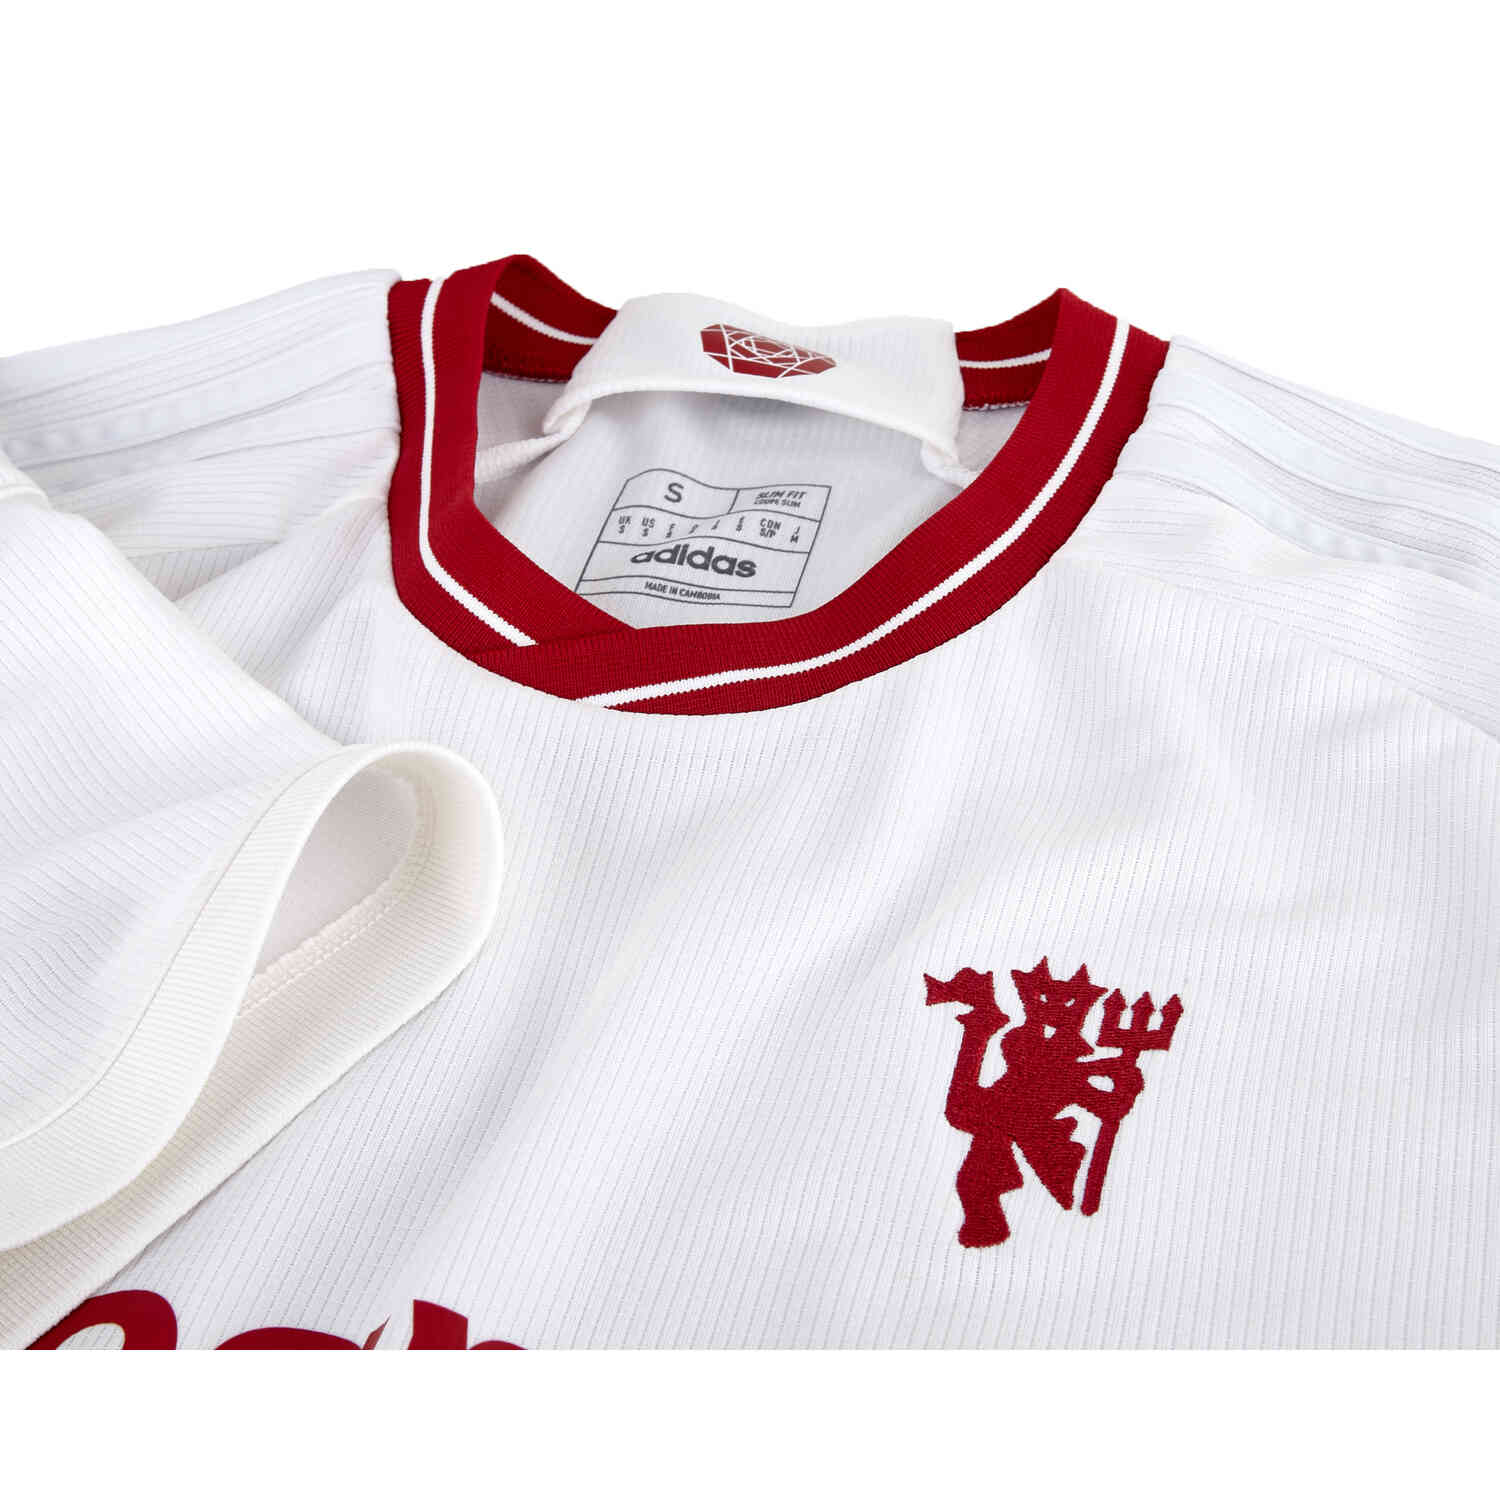 2023/24 Kids adidas Harry Kane Bayern Munich Away Jersey - SoccerPro